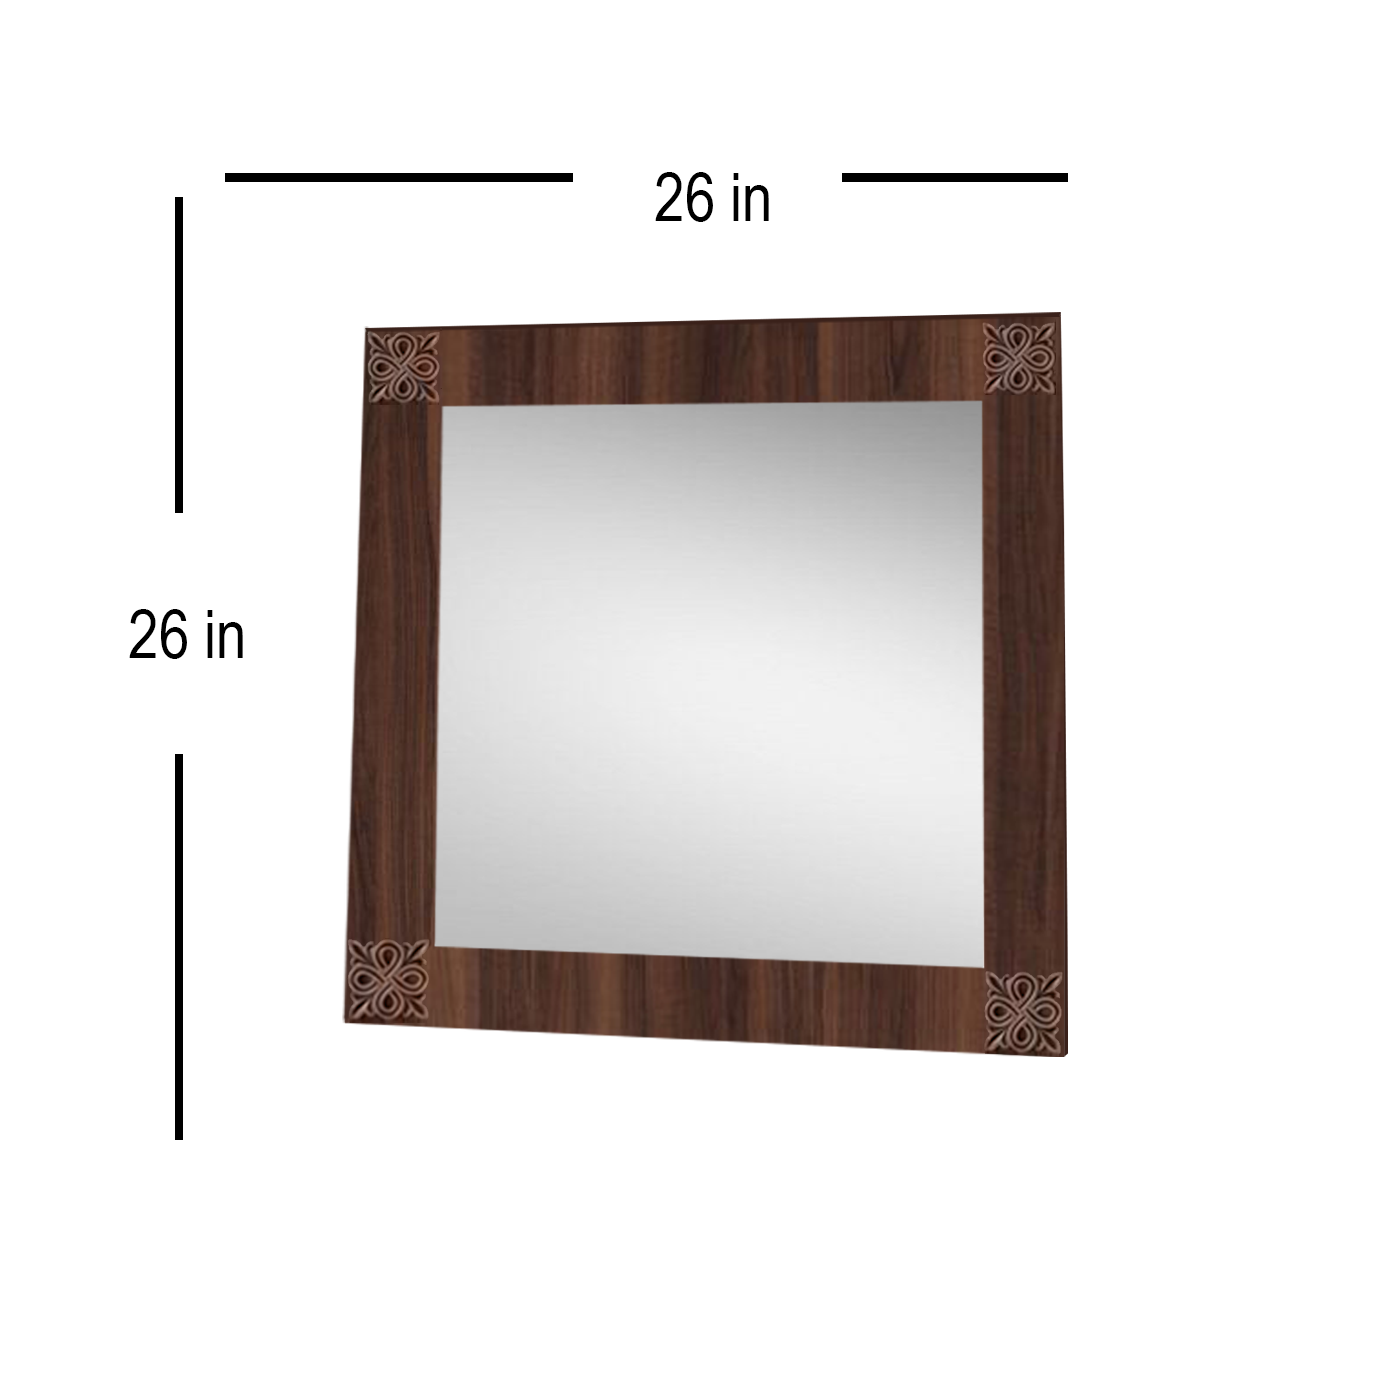 Detec™ HandCrafted Bathroom Mirror 26 inches